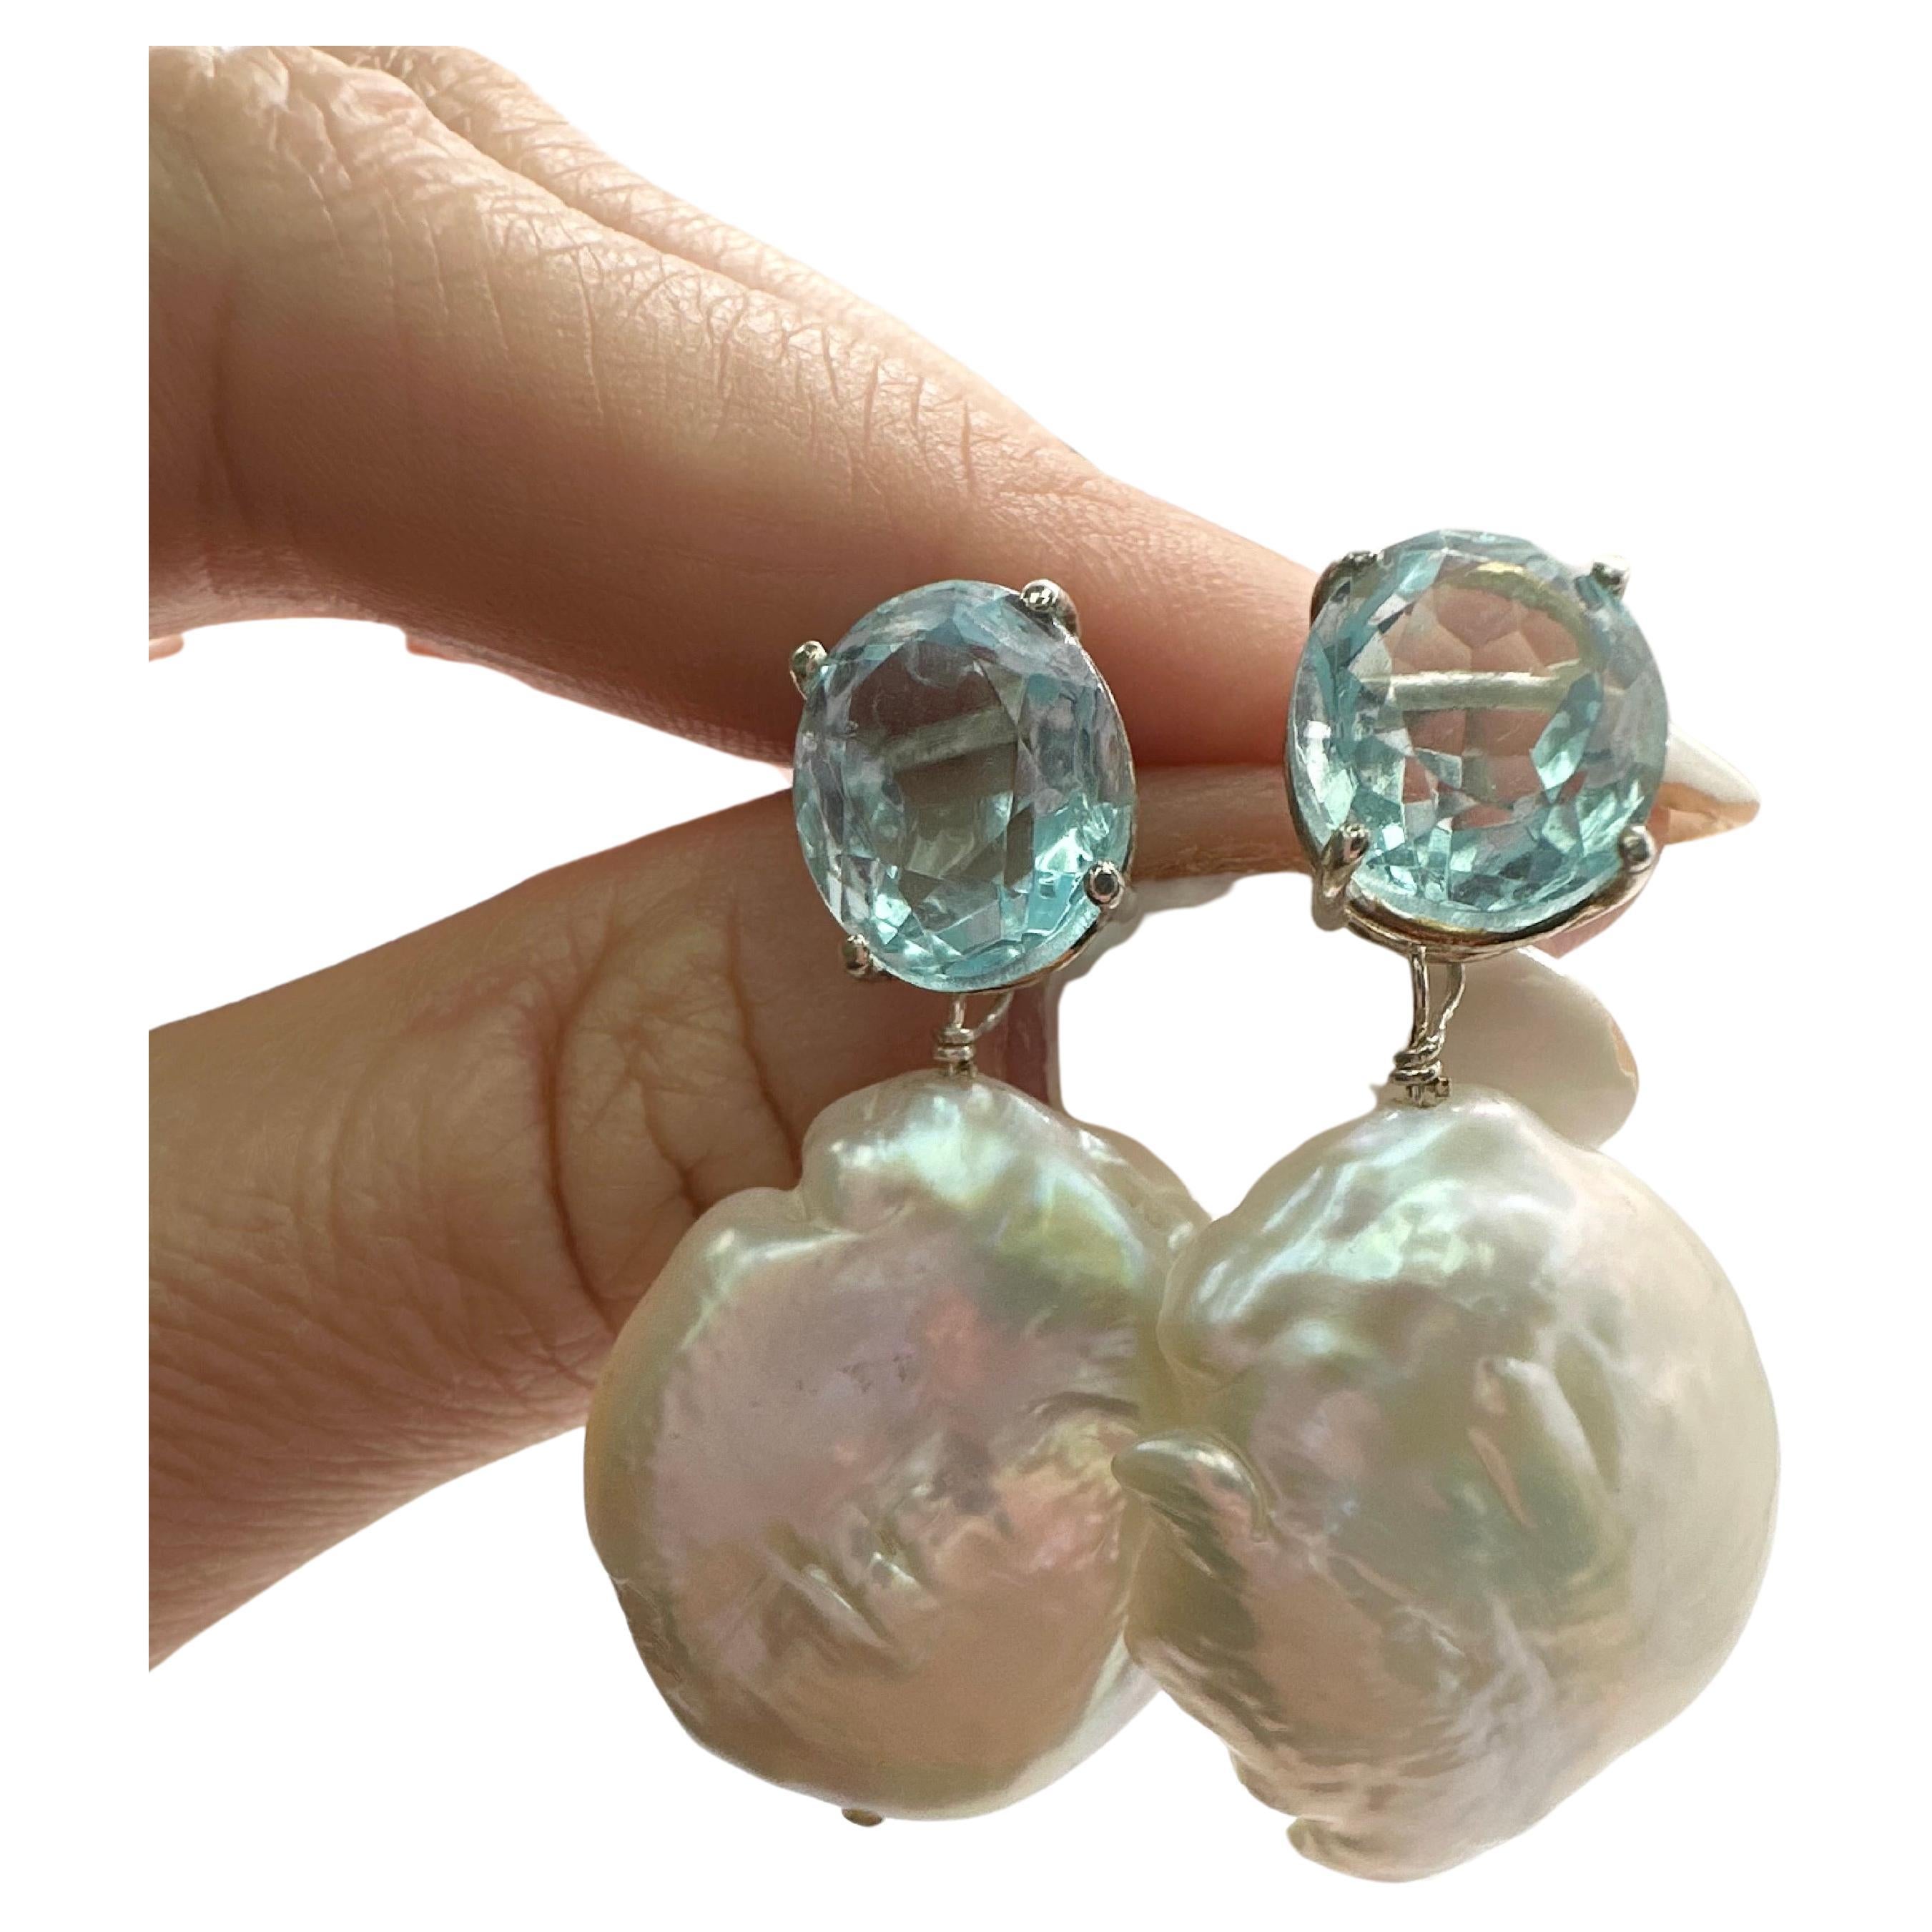 Boucles d'oreilles uniques en perles boroques avec topaze bleue en argent estampillé 925, les boucles d'oreilles sont de style pendante !

Le certificat d'authenticité est fourni avec l'achat !

À PROPOS DE NOUS
Nous sommes une entreprise familiale.